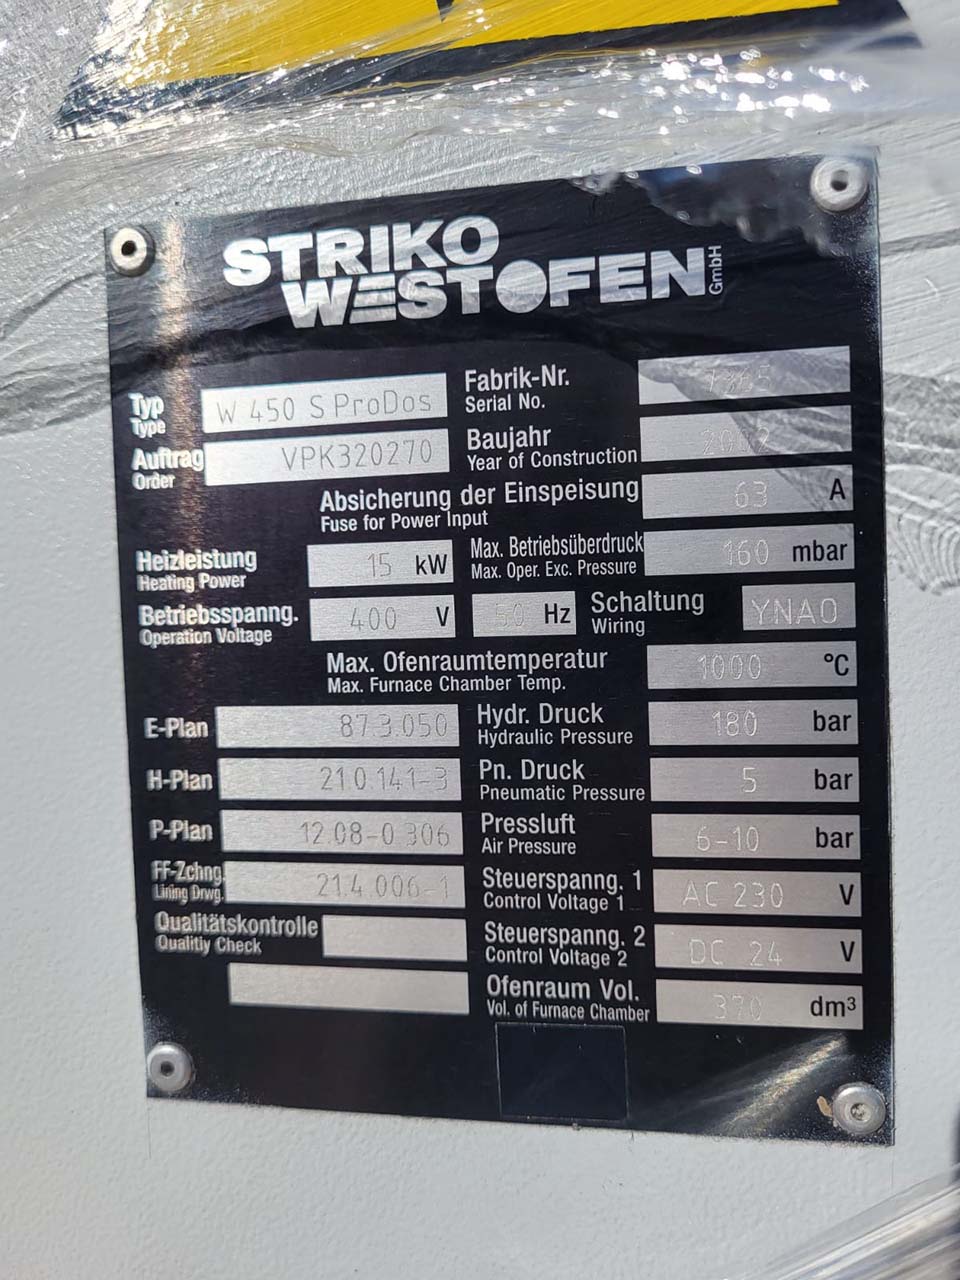 Forno doseador StrikoWestofen W 450 S ProDos DCP O1816, utilizado